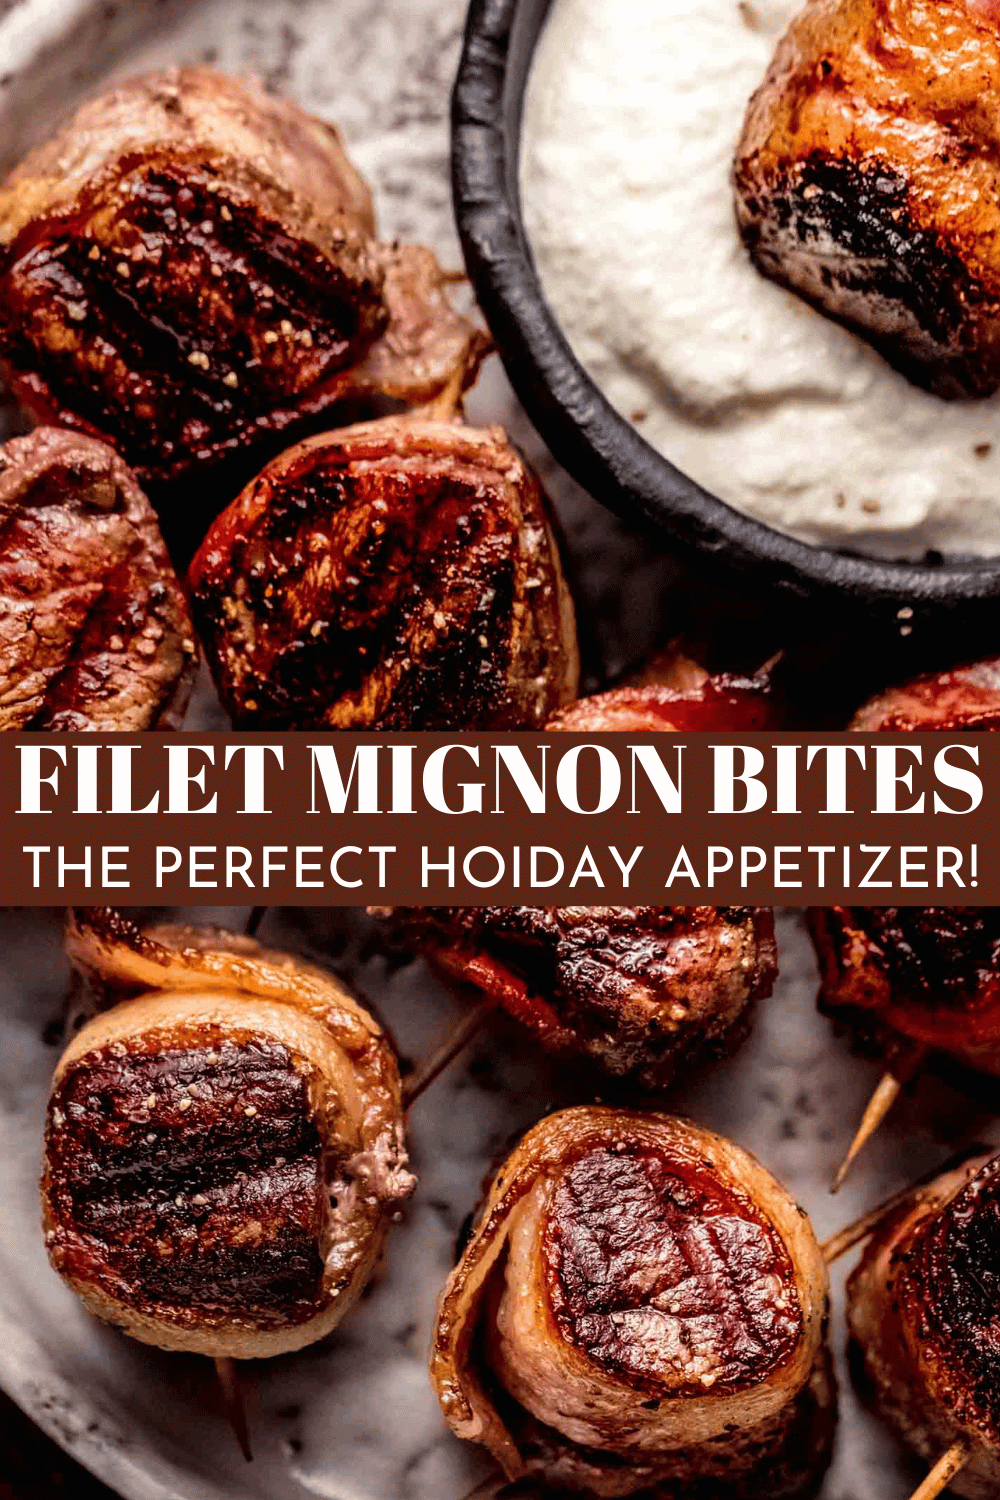 Mini Filet Mignon Bites wrapped in Bacon